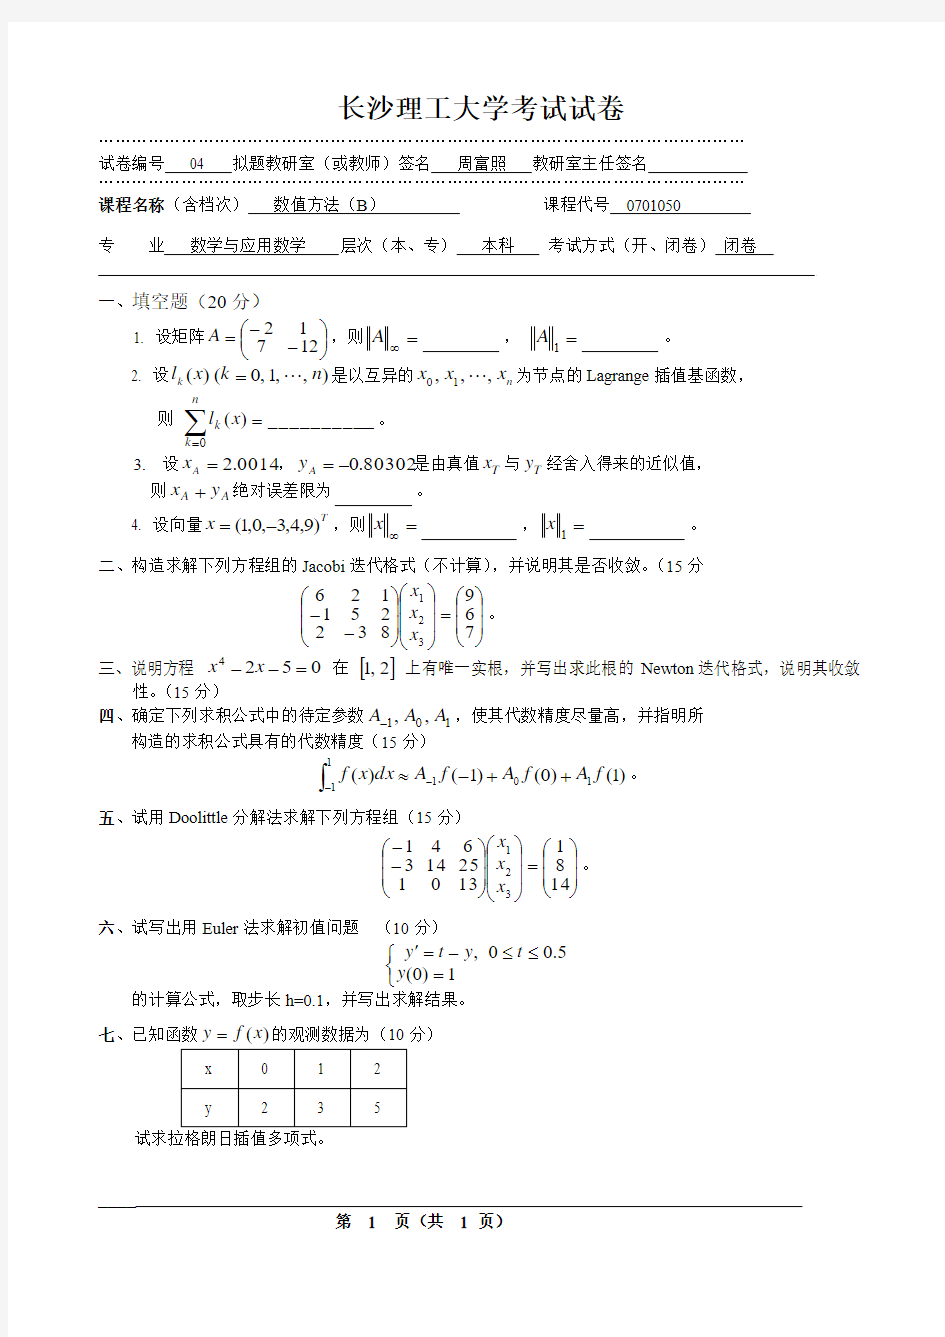 长沙理工大学数值方法考试试卷(本科)